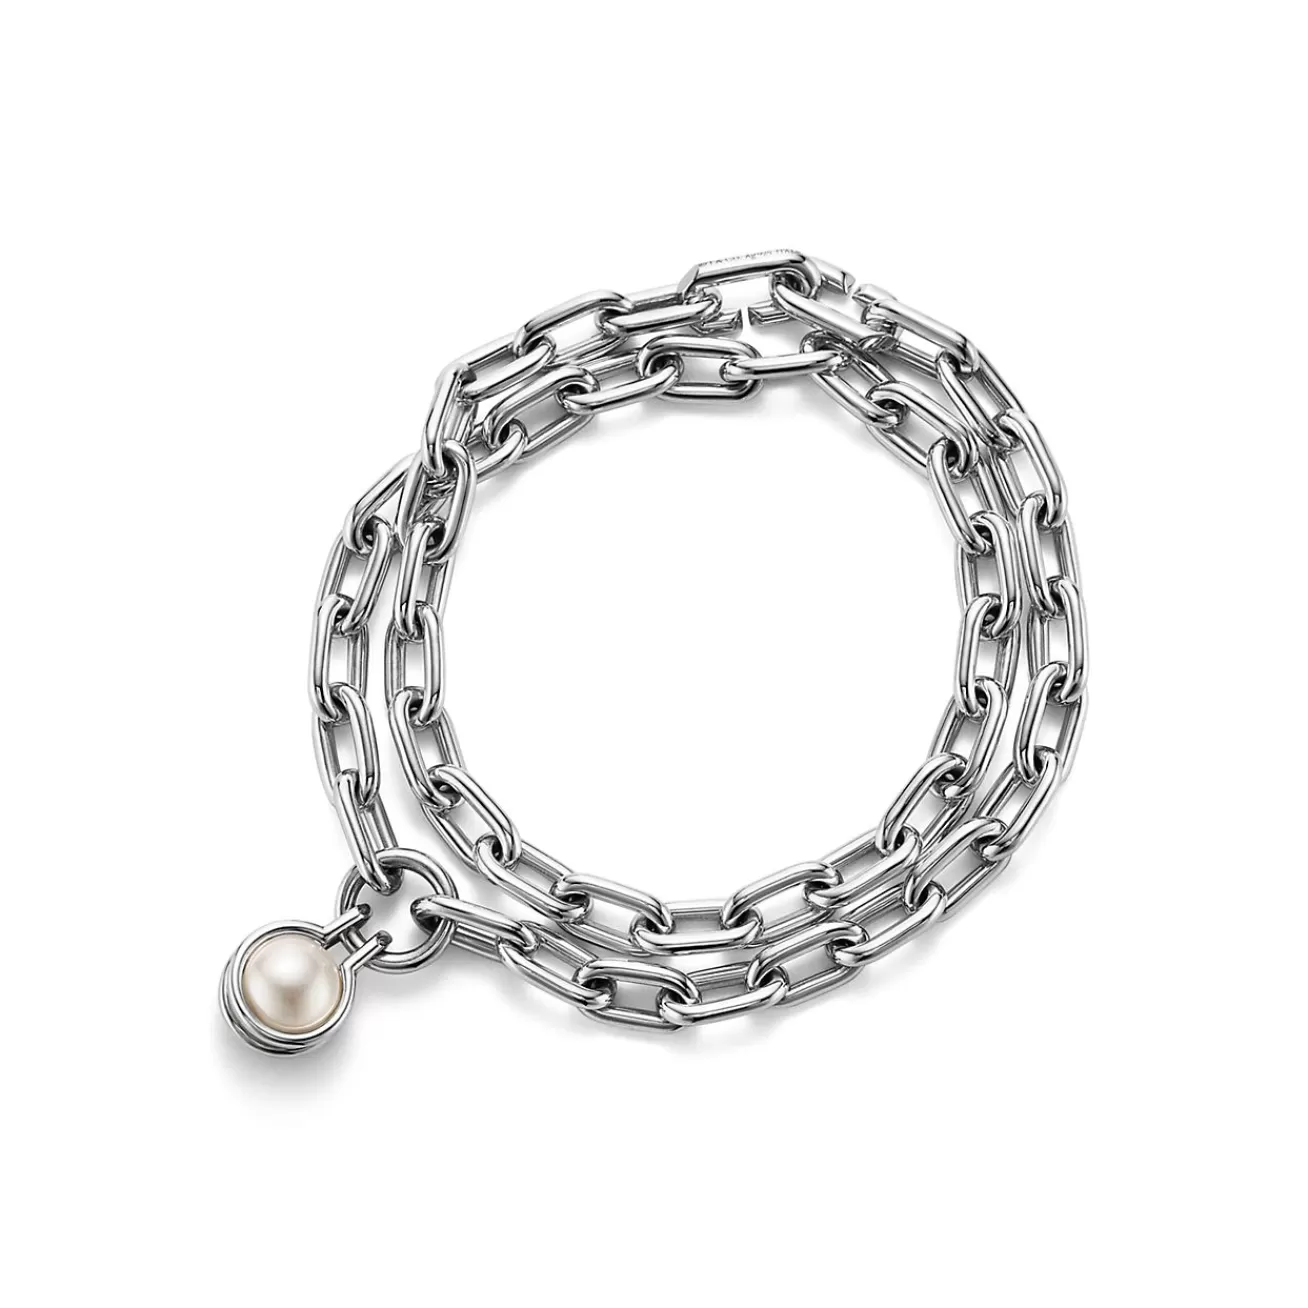 Tiffany & Co. Tiffany HardWear freshwater pearl bracelet in sterling silver, medium. | ^ Bracelets | Gifts for Her